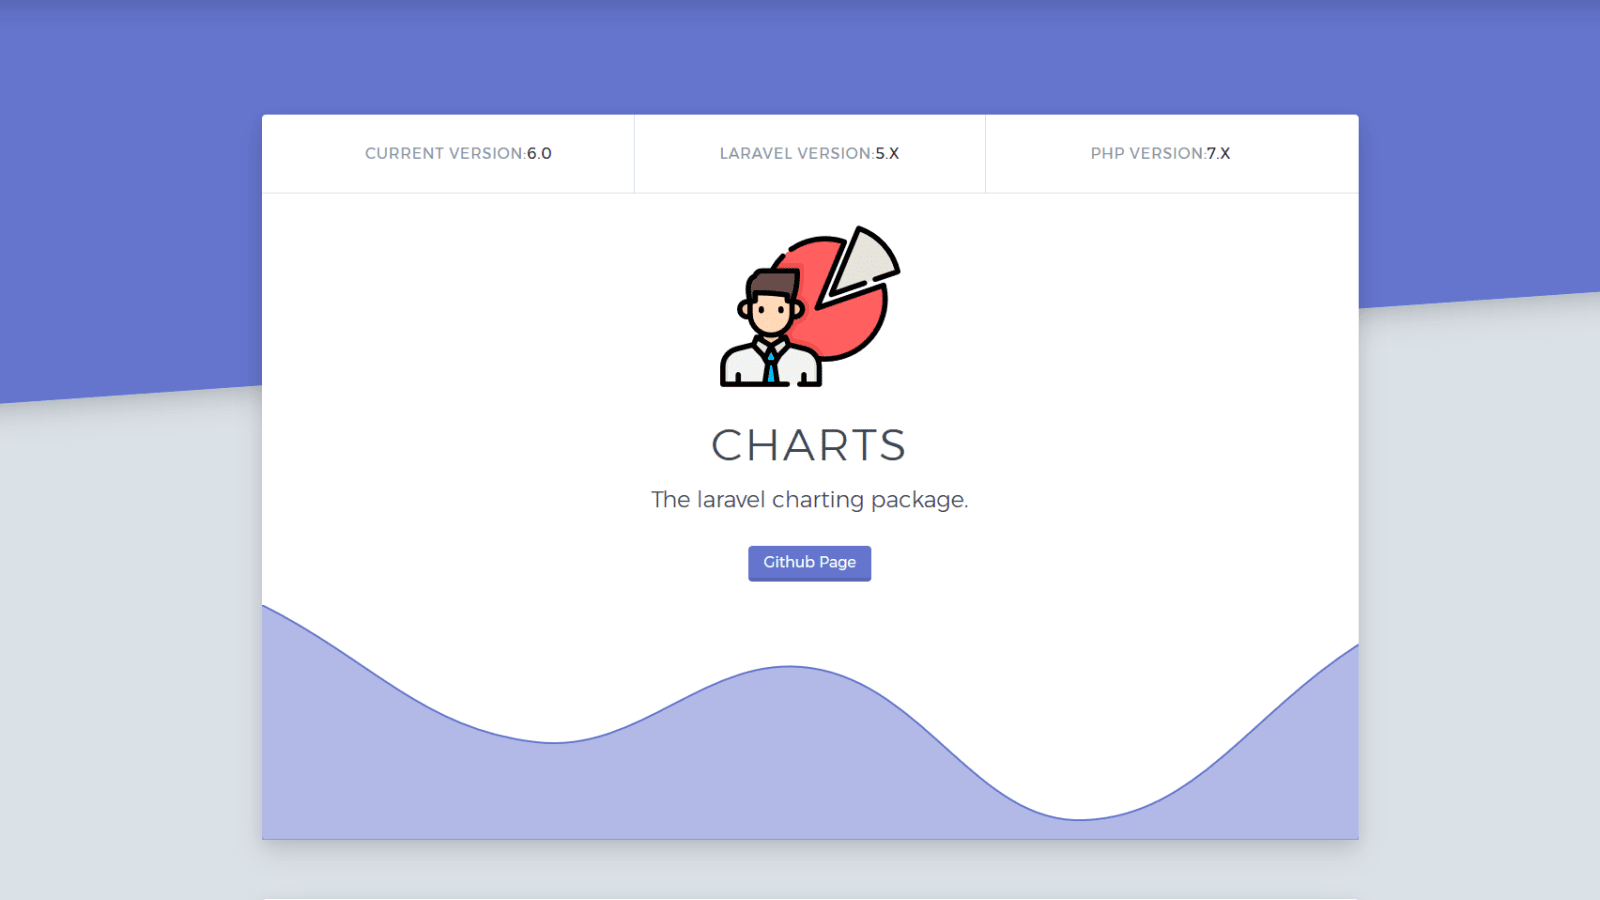 Laravel charts: Khám phá lực lượng mạnh mẽ của Laravel Charts với những biểu đồ thú vị! Xem đồ thị đầy màu sắc này cung cấp thông tin chi tiết về dữ liệu của bạn trong các bộ sưu tập thống kê đẹp mắt.